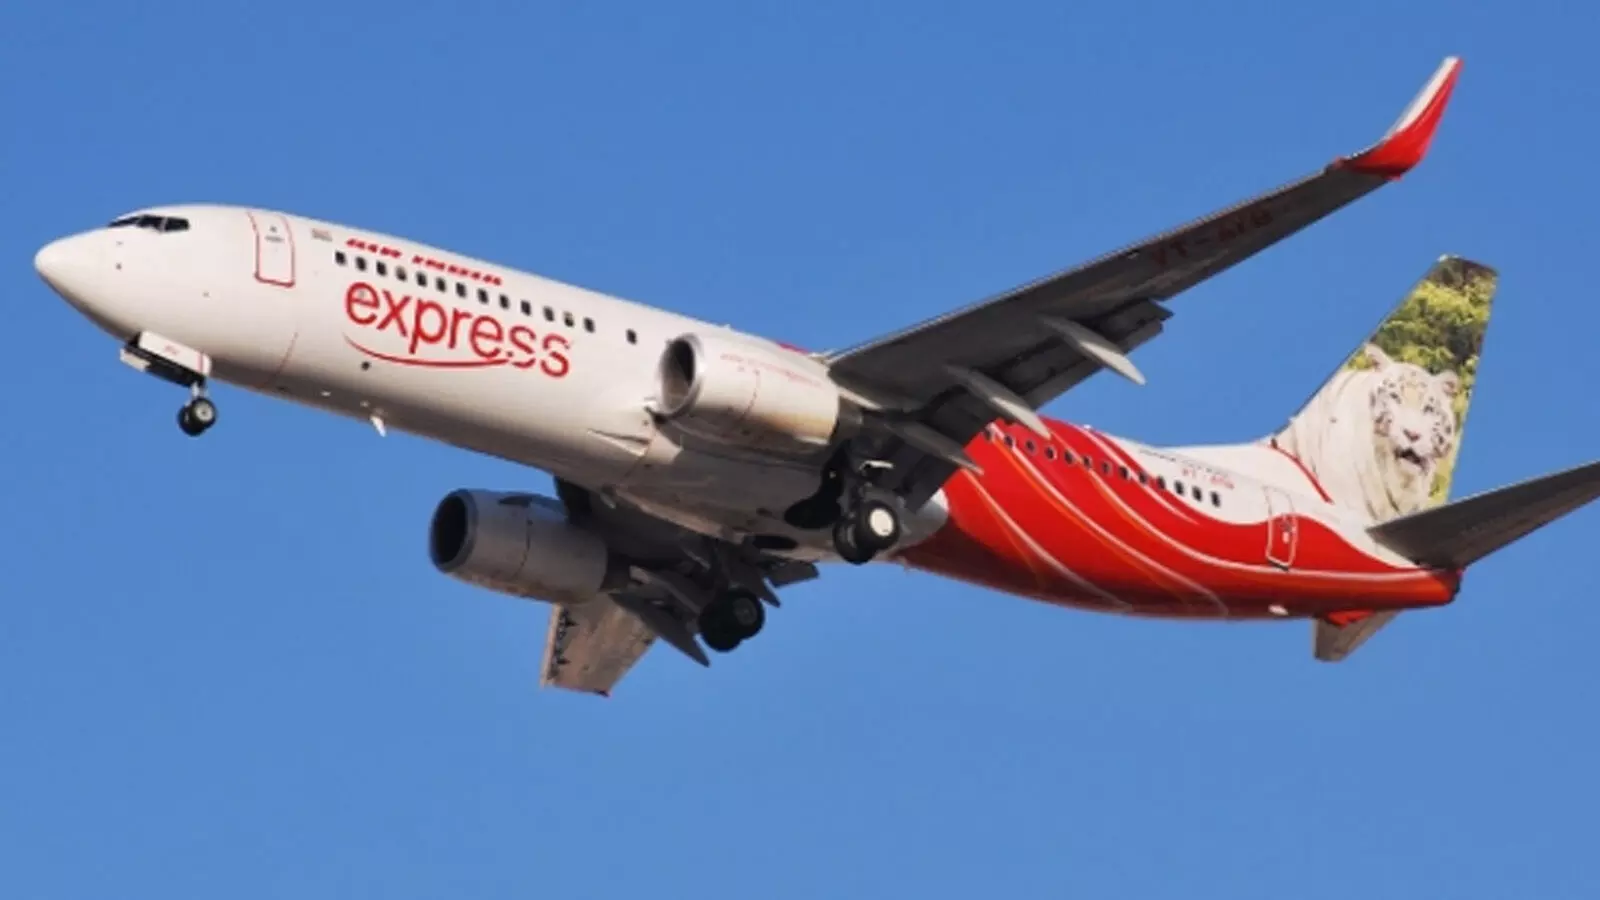 Air India Express Aircraft makes Emergency landing at Kozhikode Airport